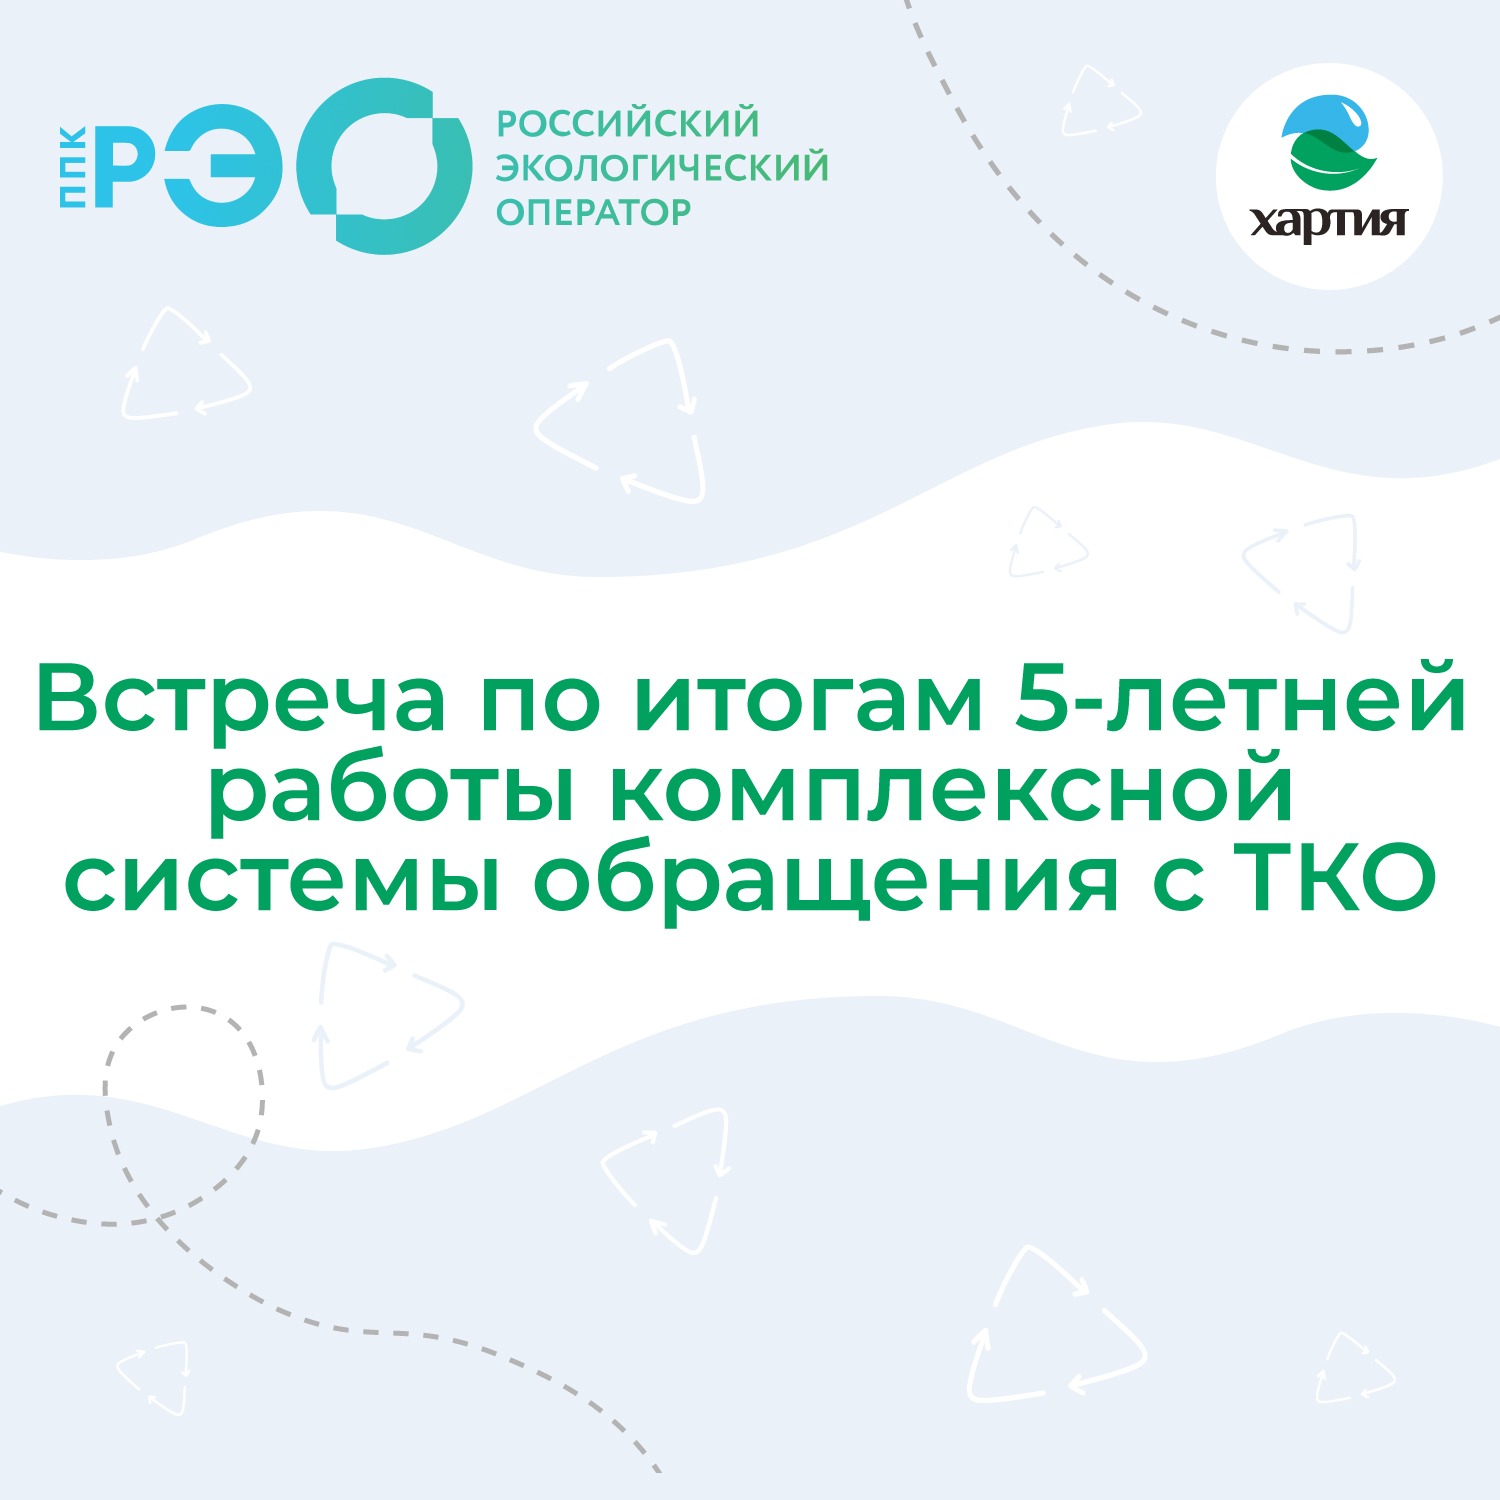 Отчет ППК РЭО о формировании комплексной системы обращения с ТКО